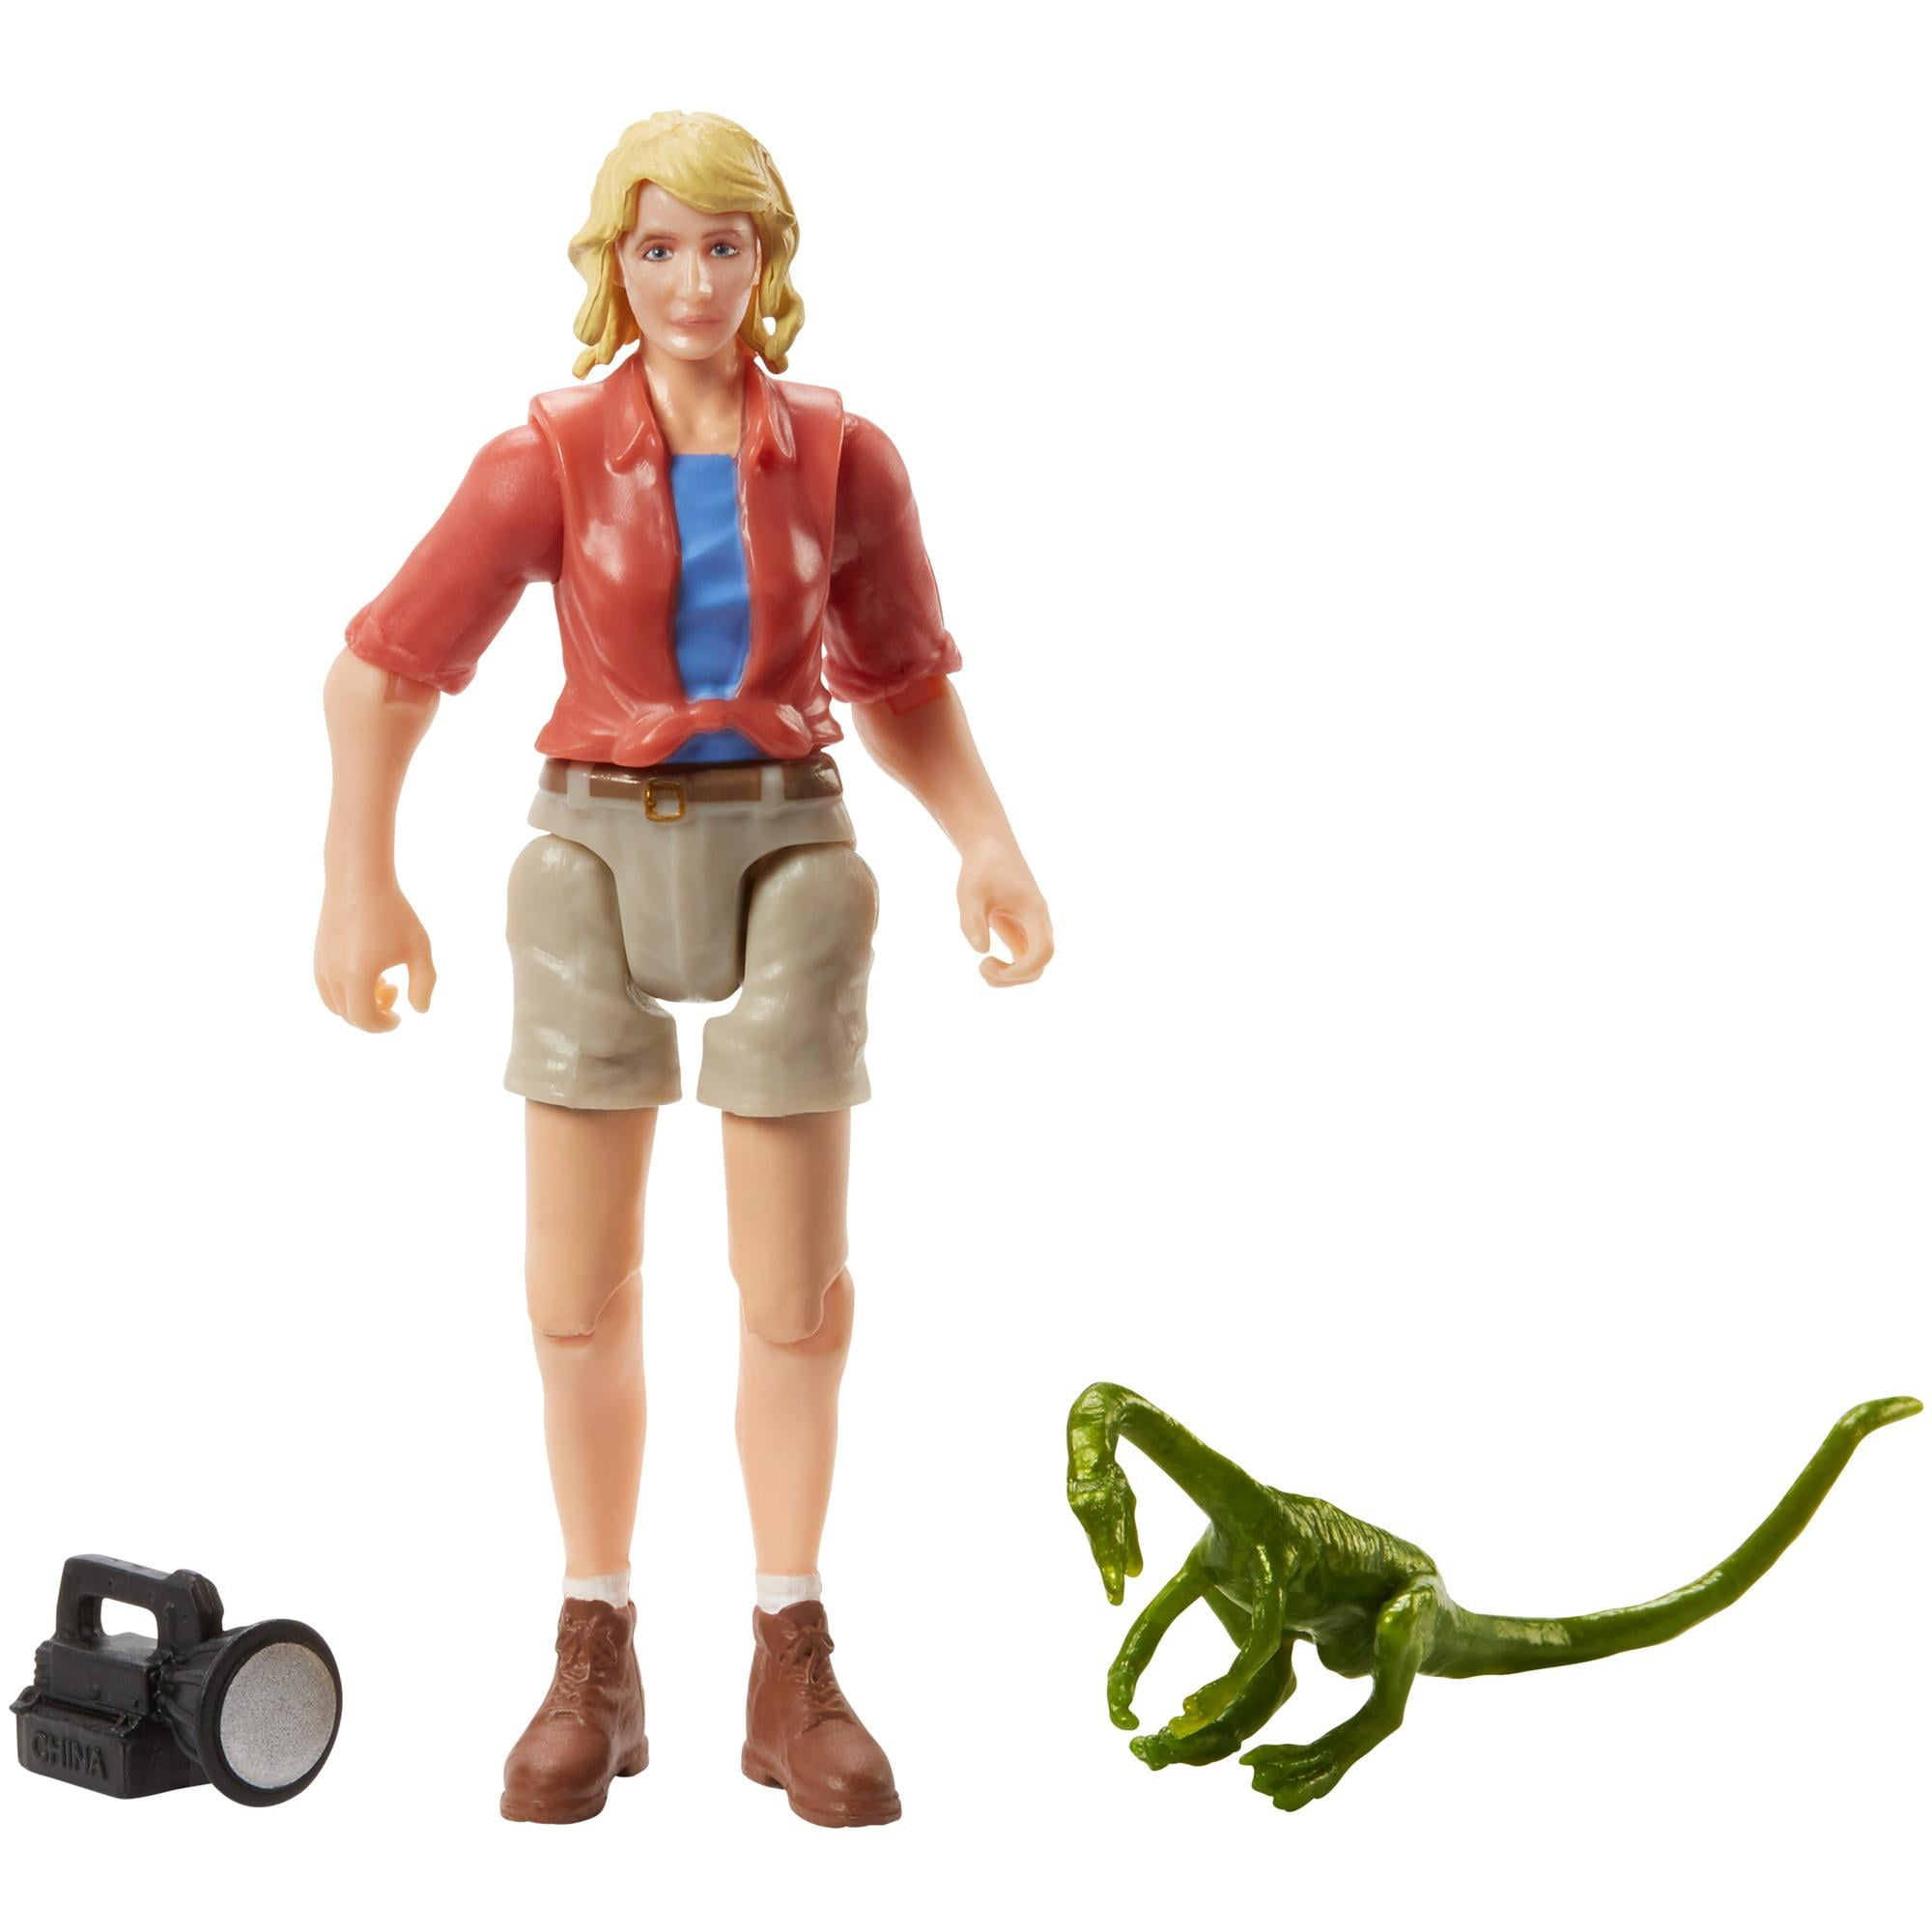 Jurassic World Legacy Collection Dr Ellie Sattler Action Figure Mattel 2018